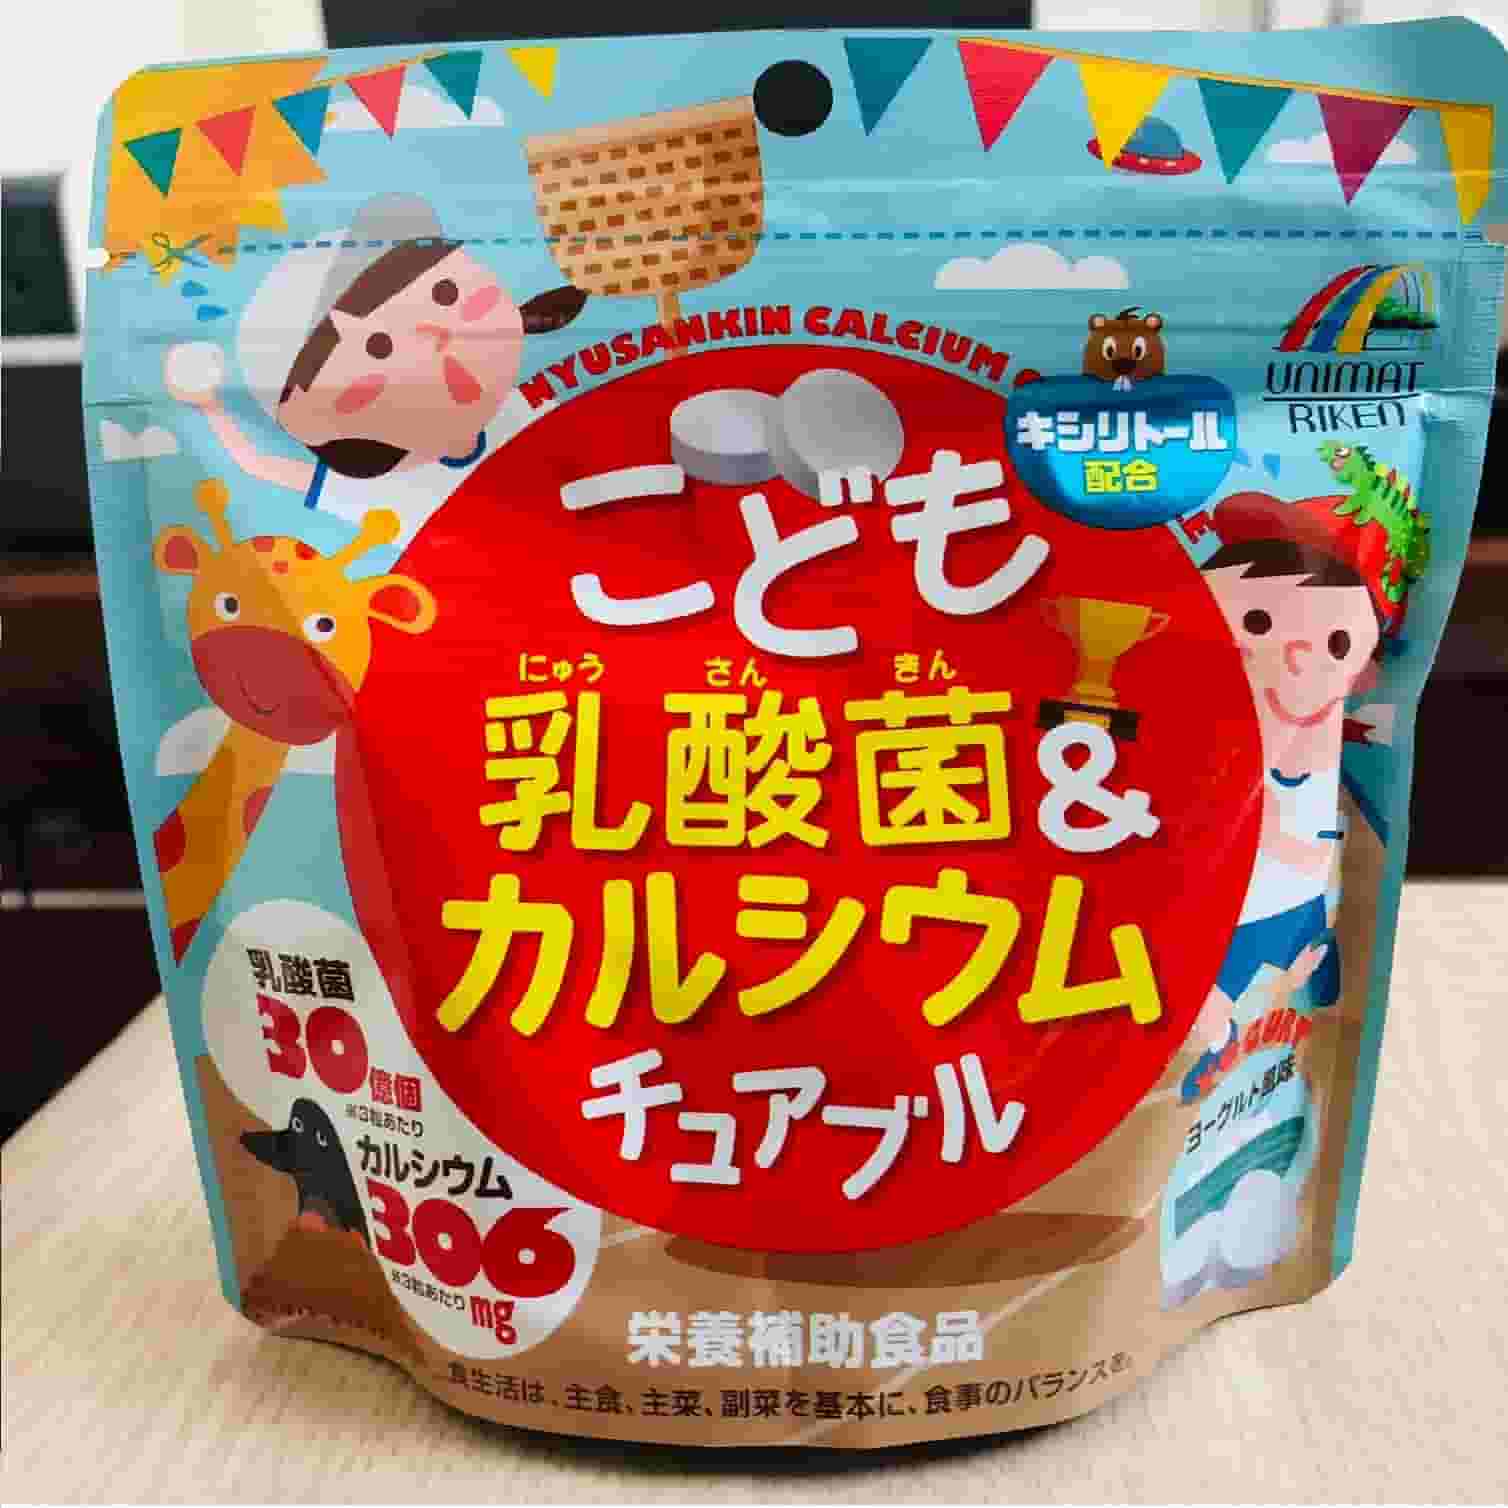 Kẹo nhai bổ sung Canxi và Lactic Unimat Riken cao cấp Nhật Bản gói 90 viên